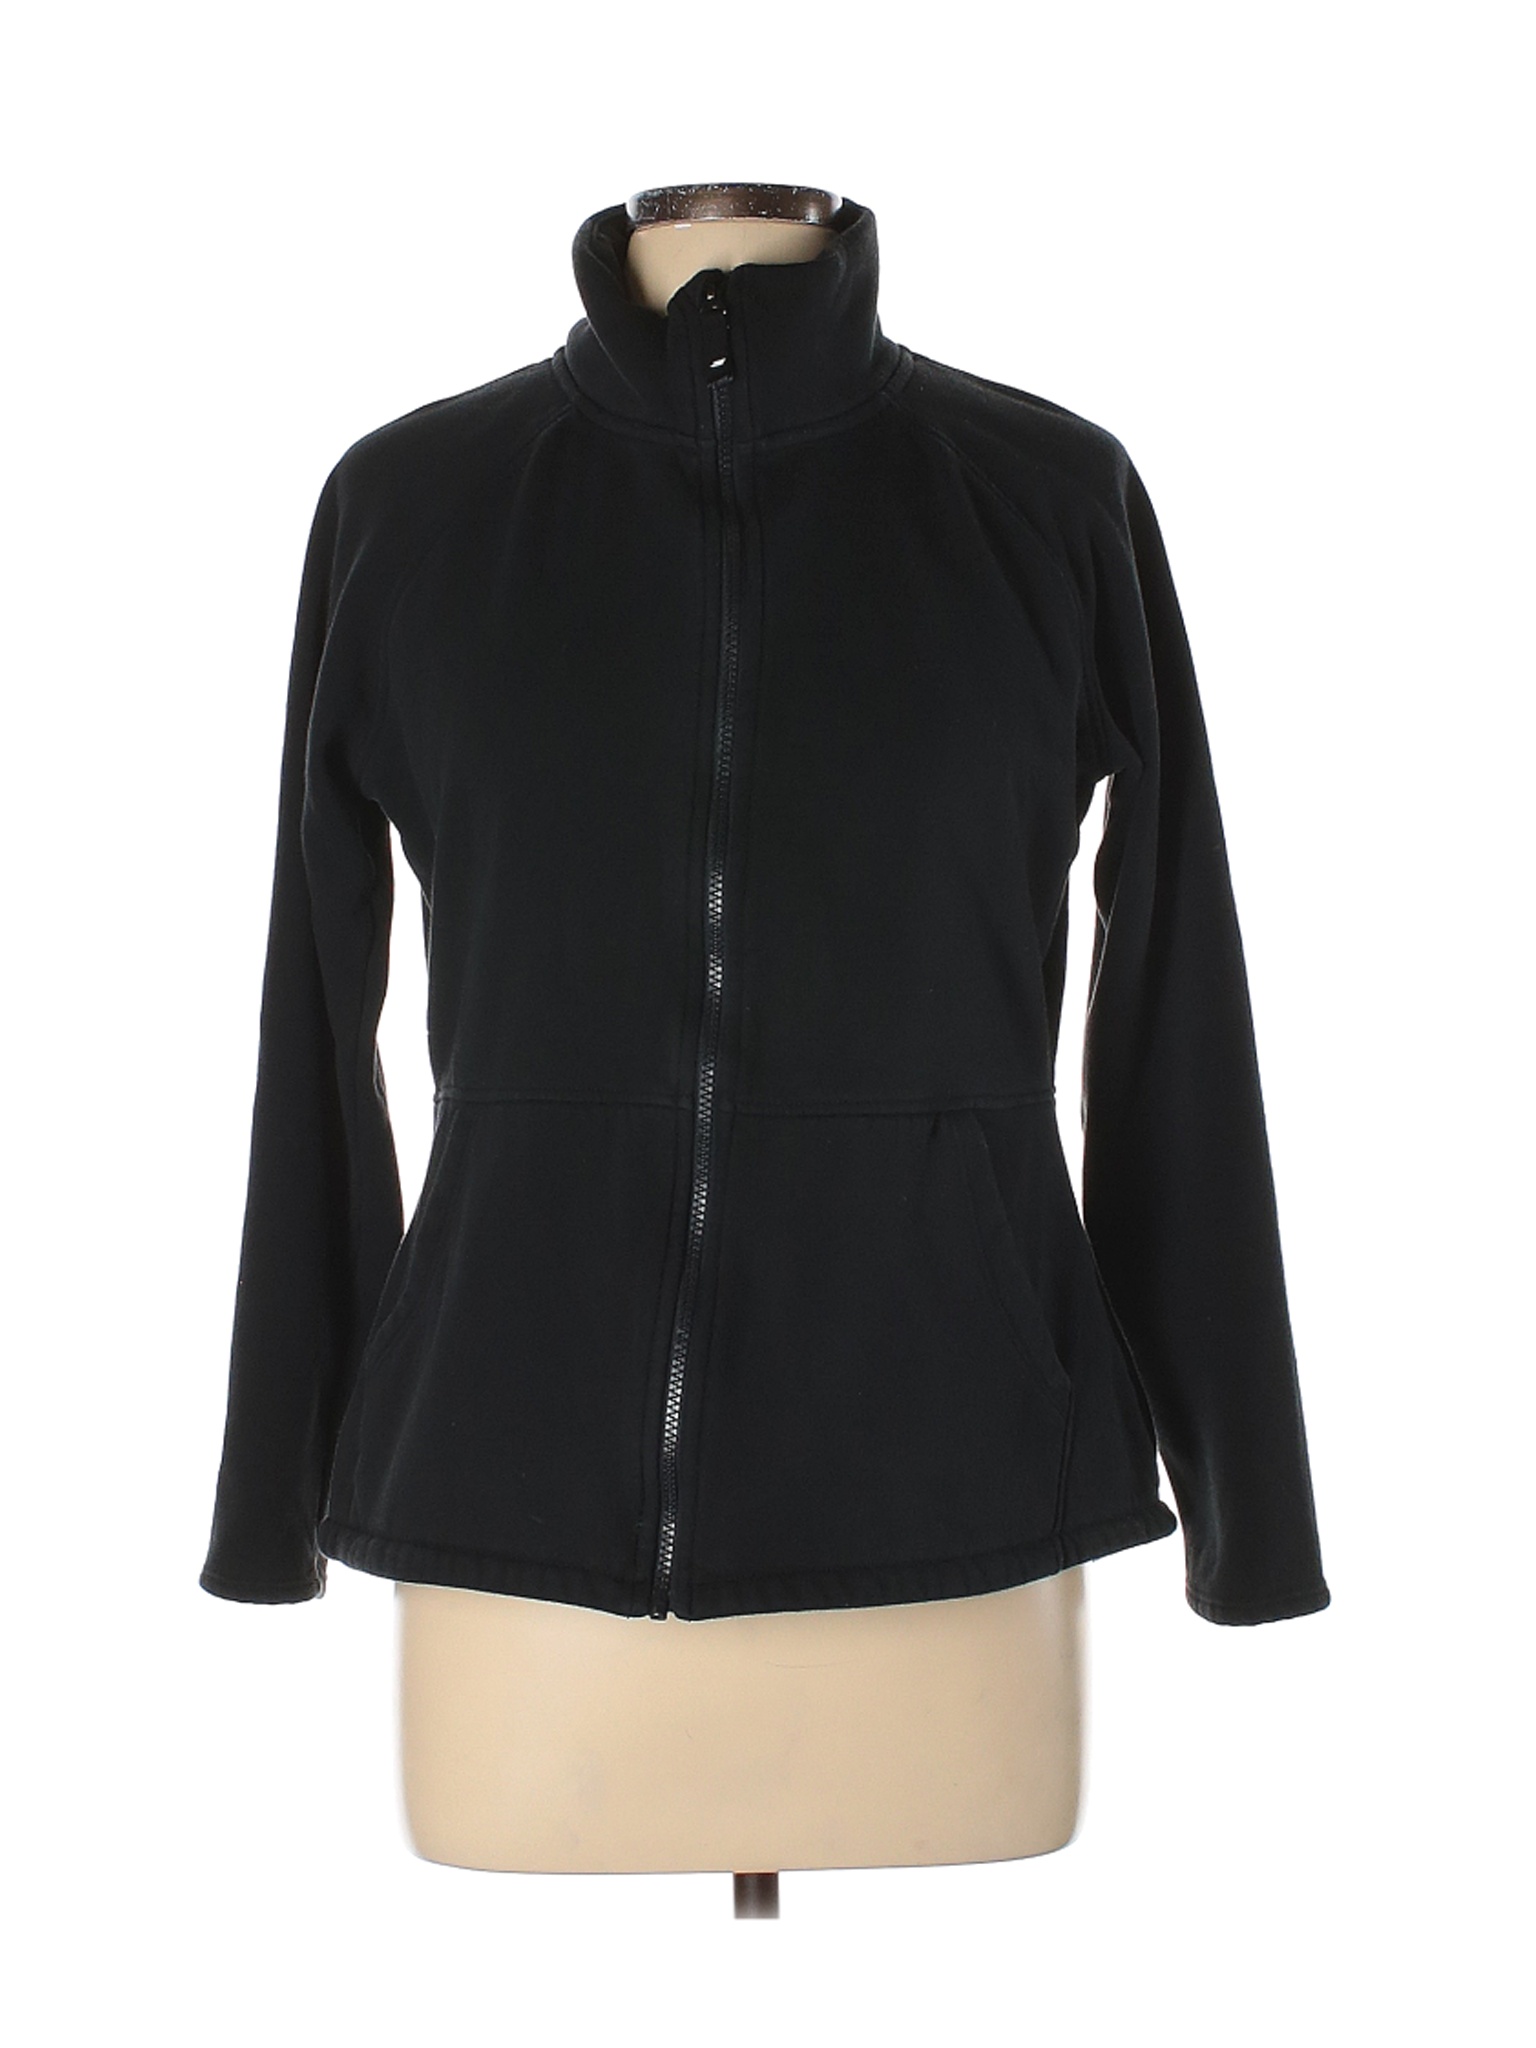 Skechers Women Black Jacket L | eBay